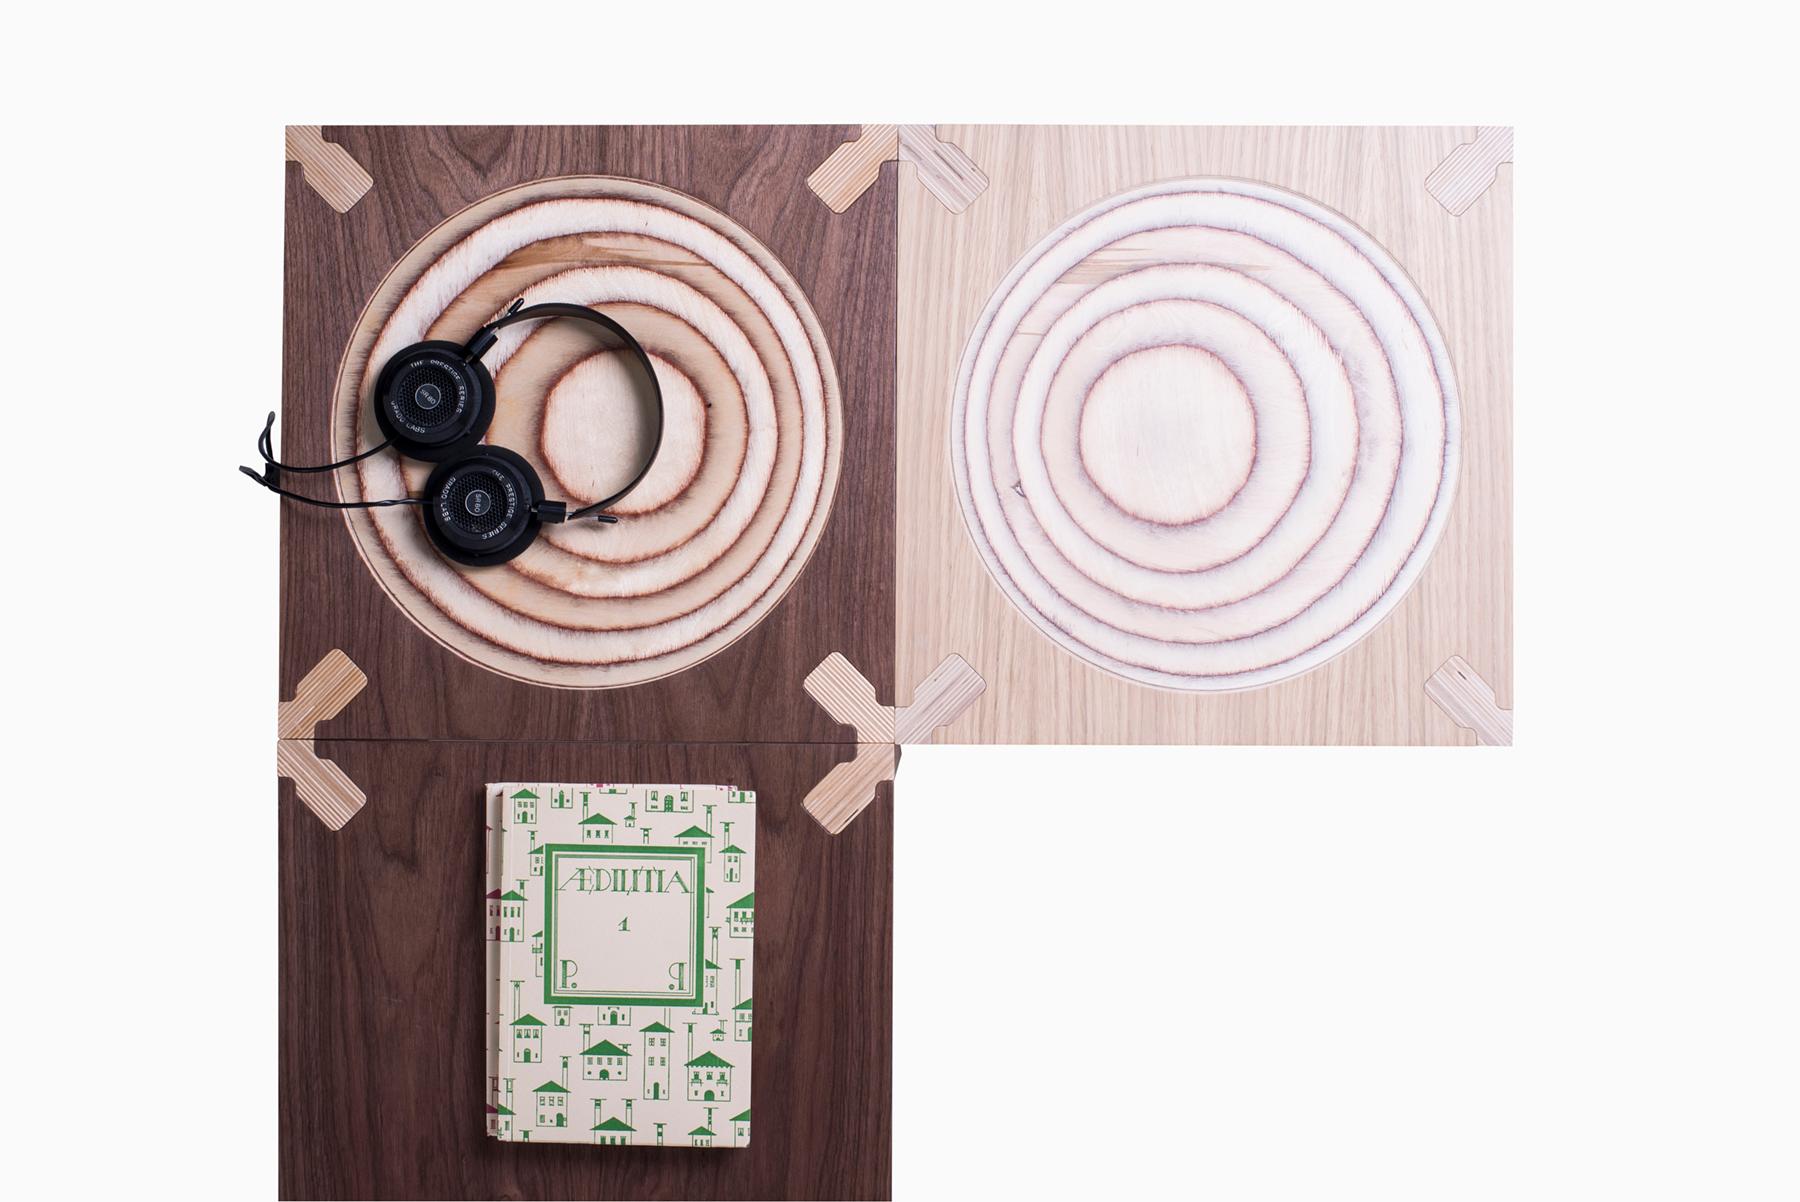 Dieser minimalistische, vielseitige Hocker oder Beistelltisch gehört zur MiMi-Serie und setzt Akzente in Haus und Büro. Die klare, facettierte Geometrie und die lackierten Oberflächen verleihen ihm Tiefe und Raffinesse, während die geschnitzte